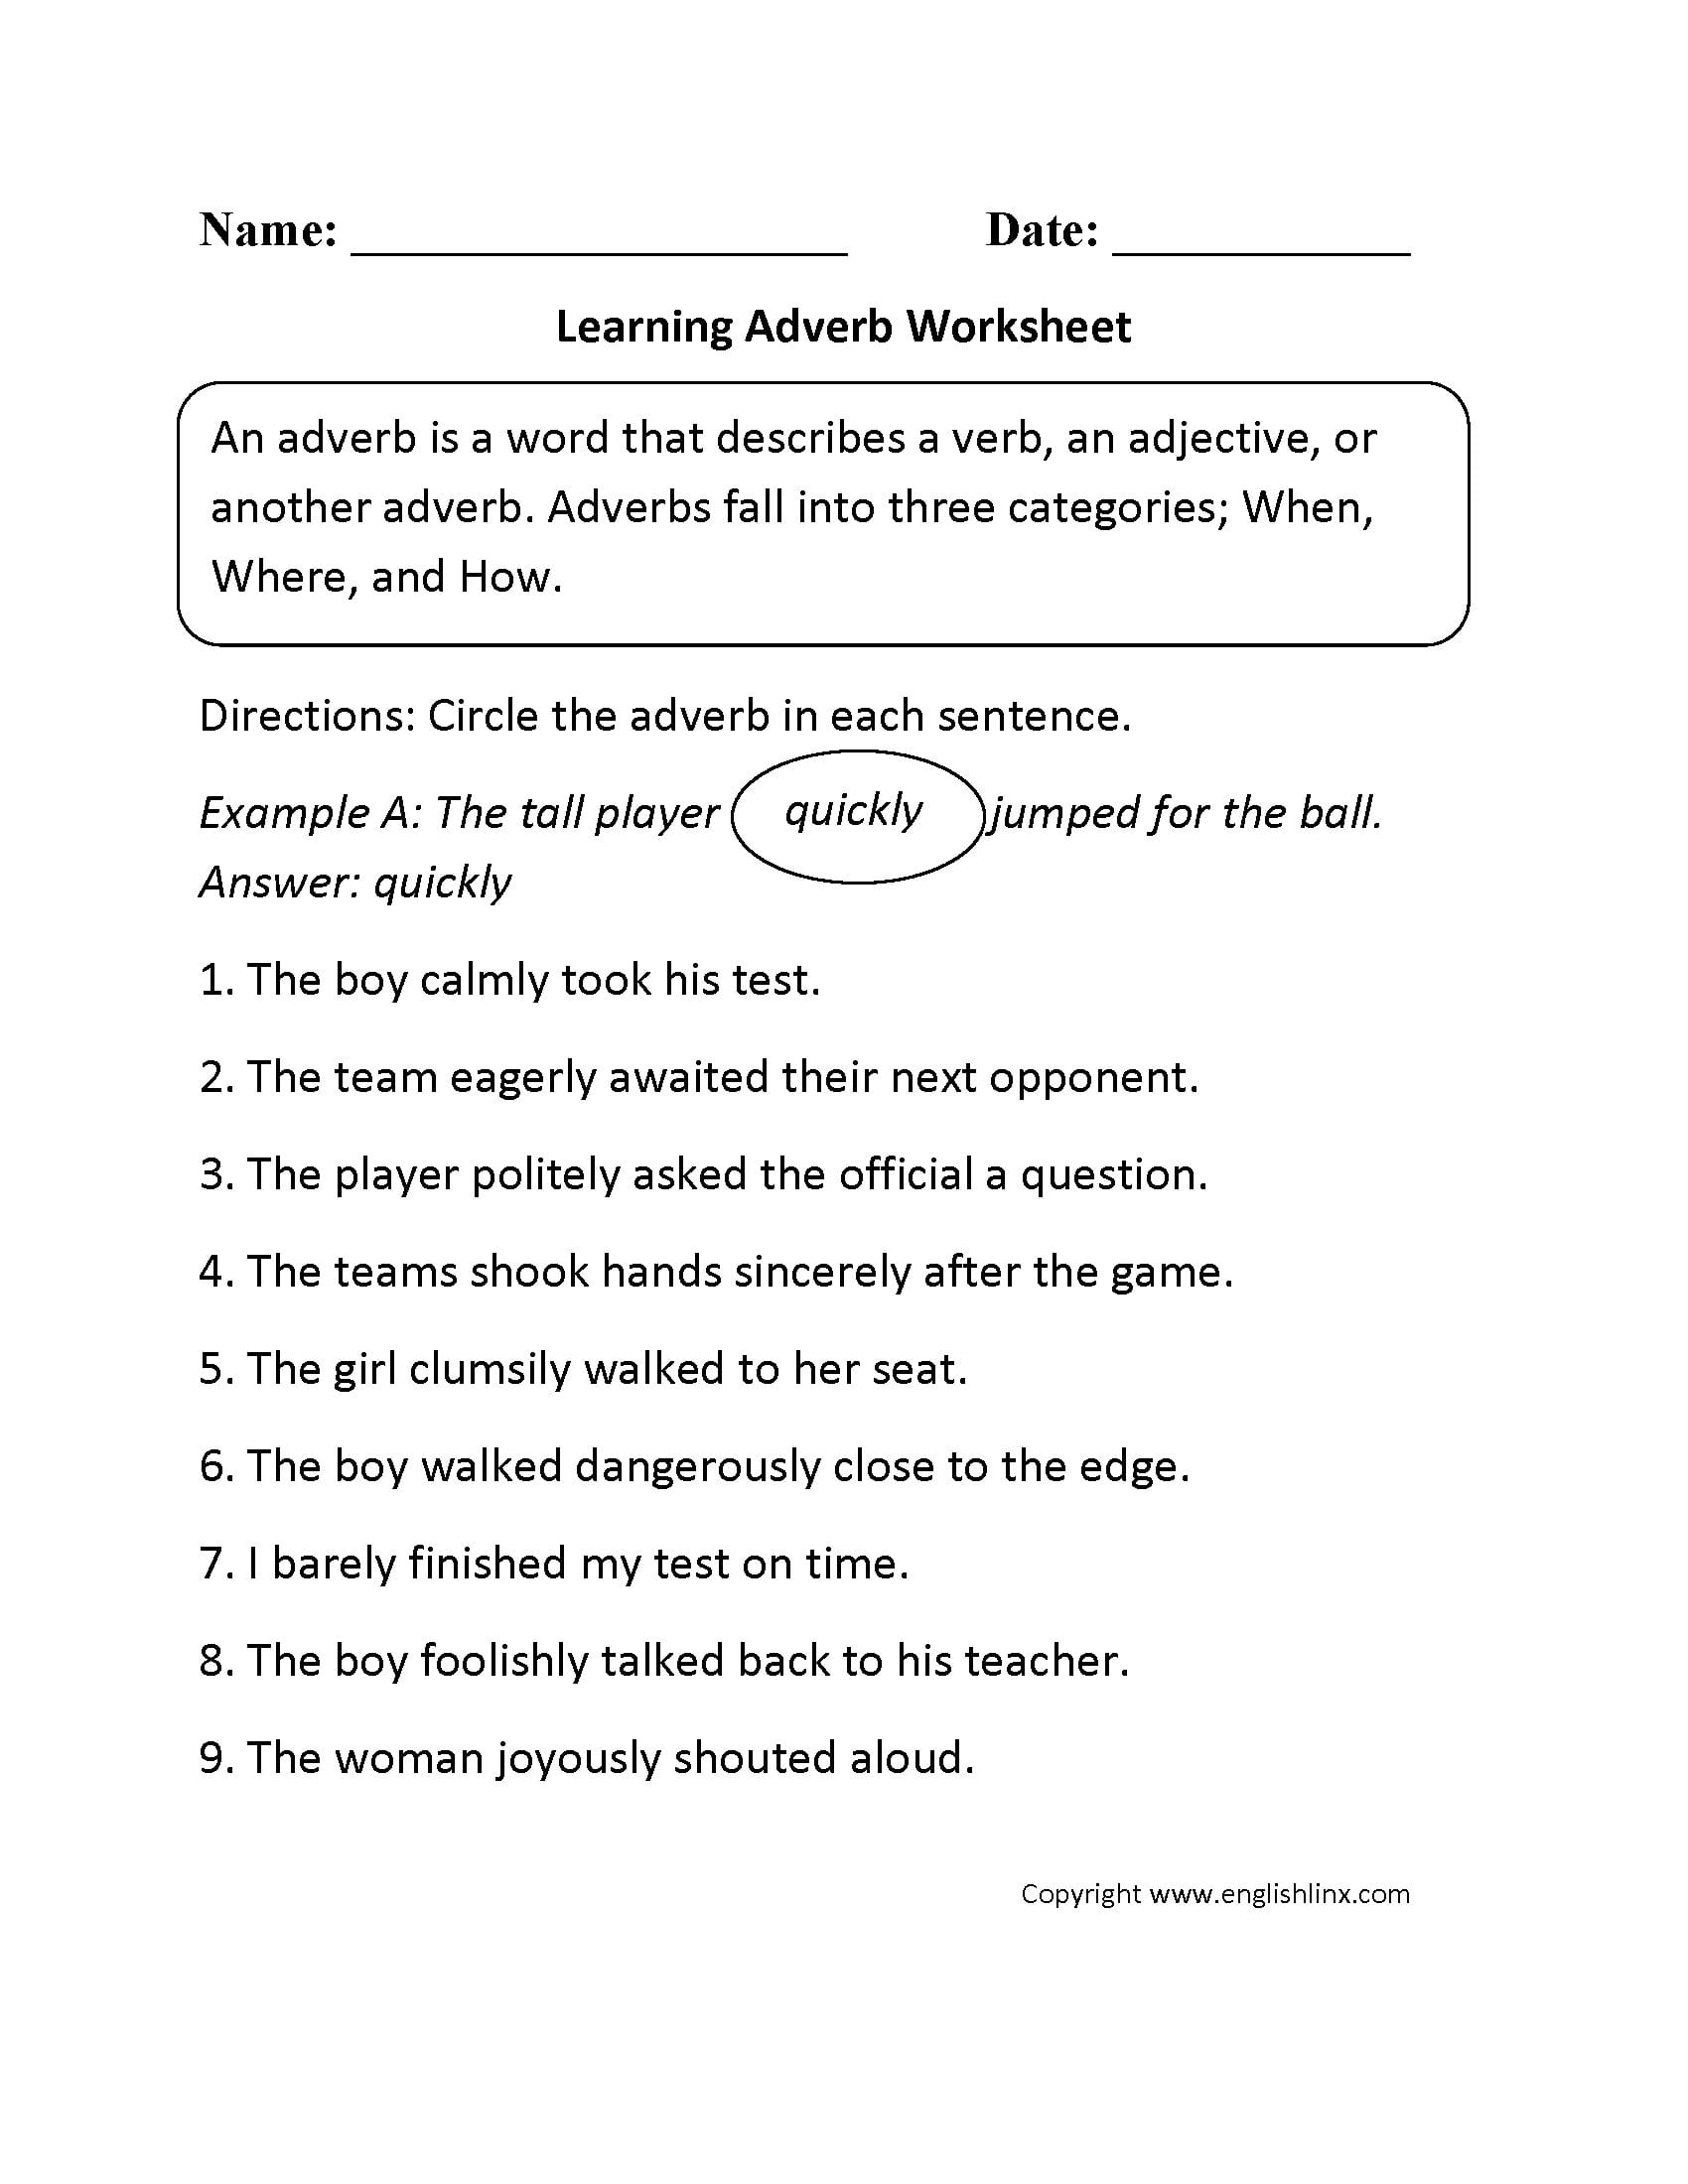 adverb-practice-worksheets-db-excel